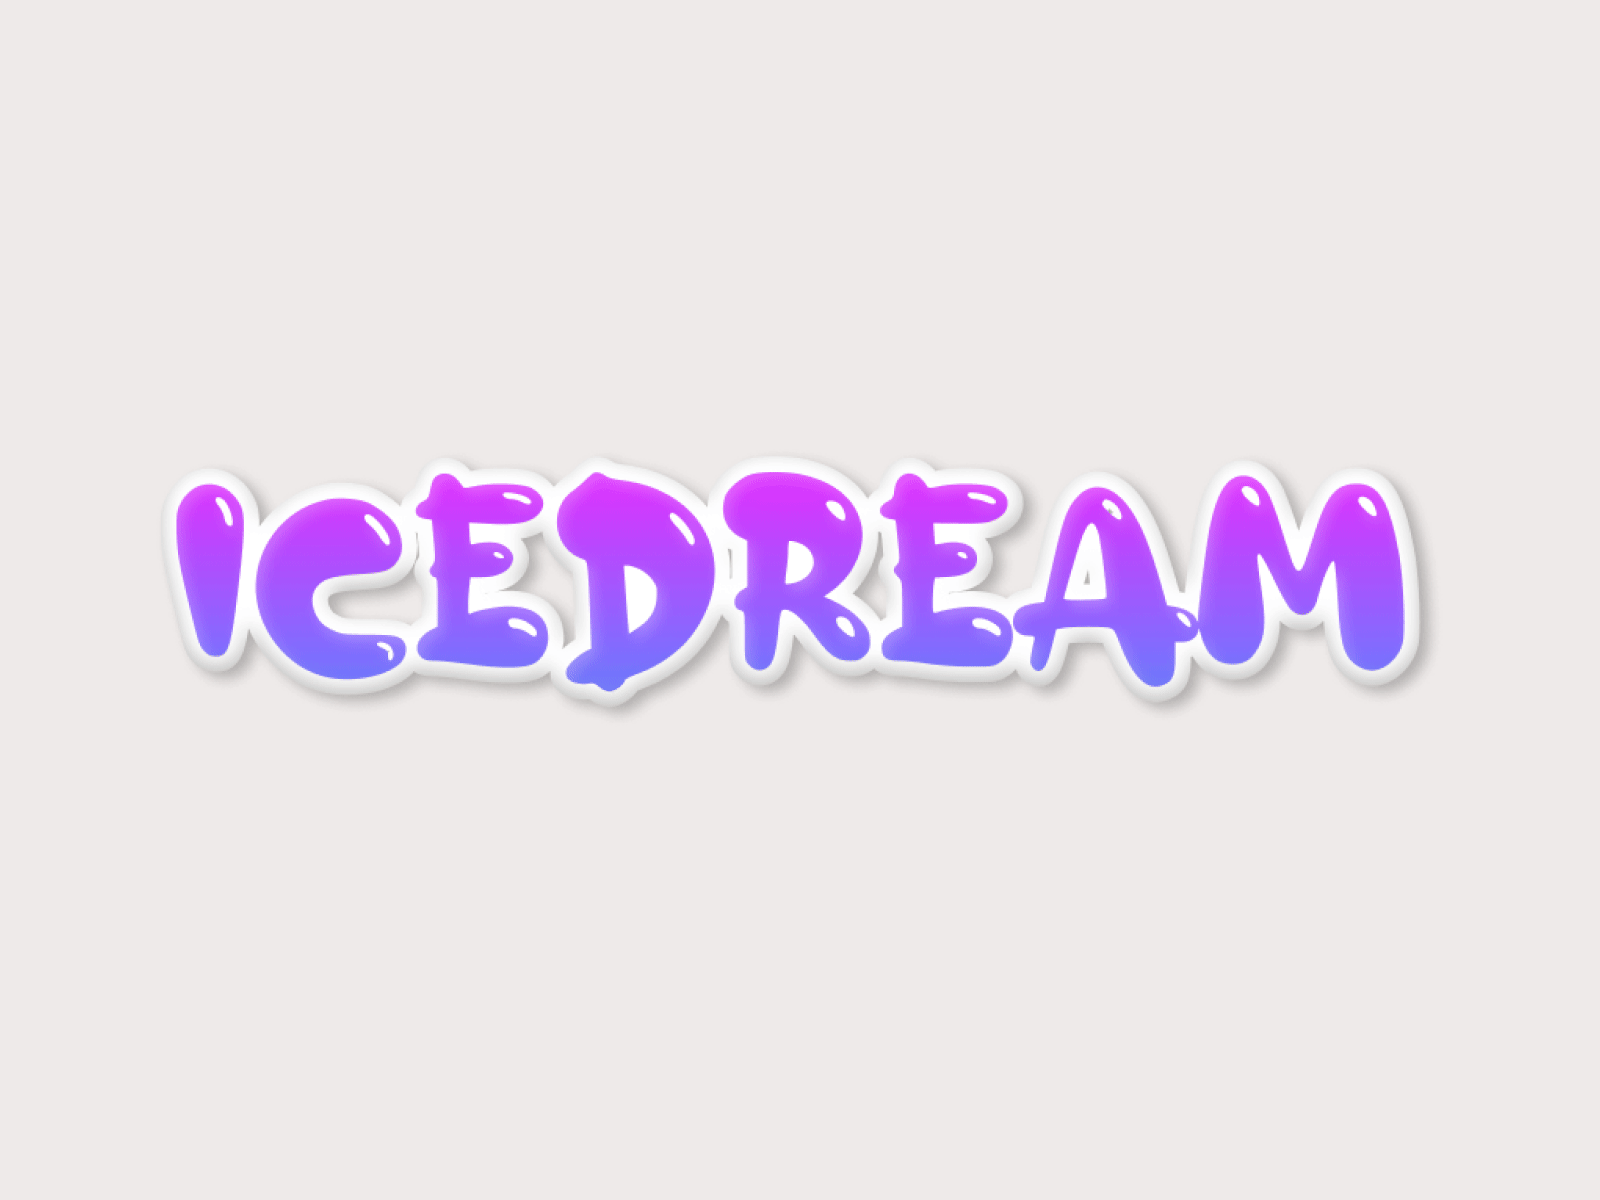 IceDream logo concept